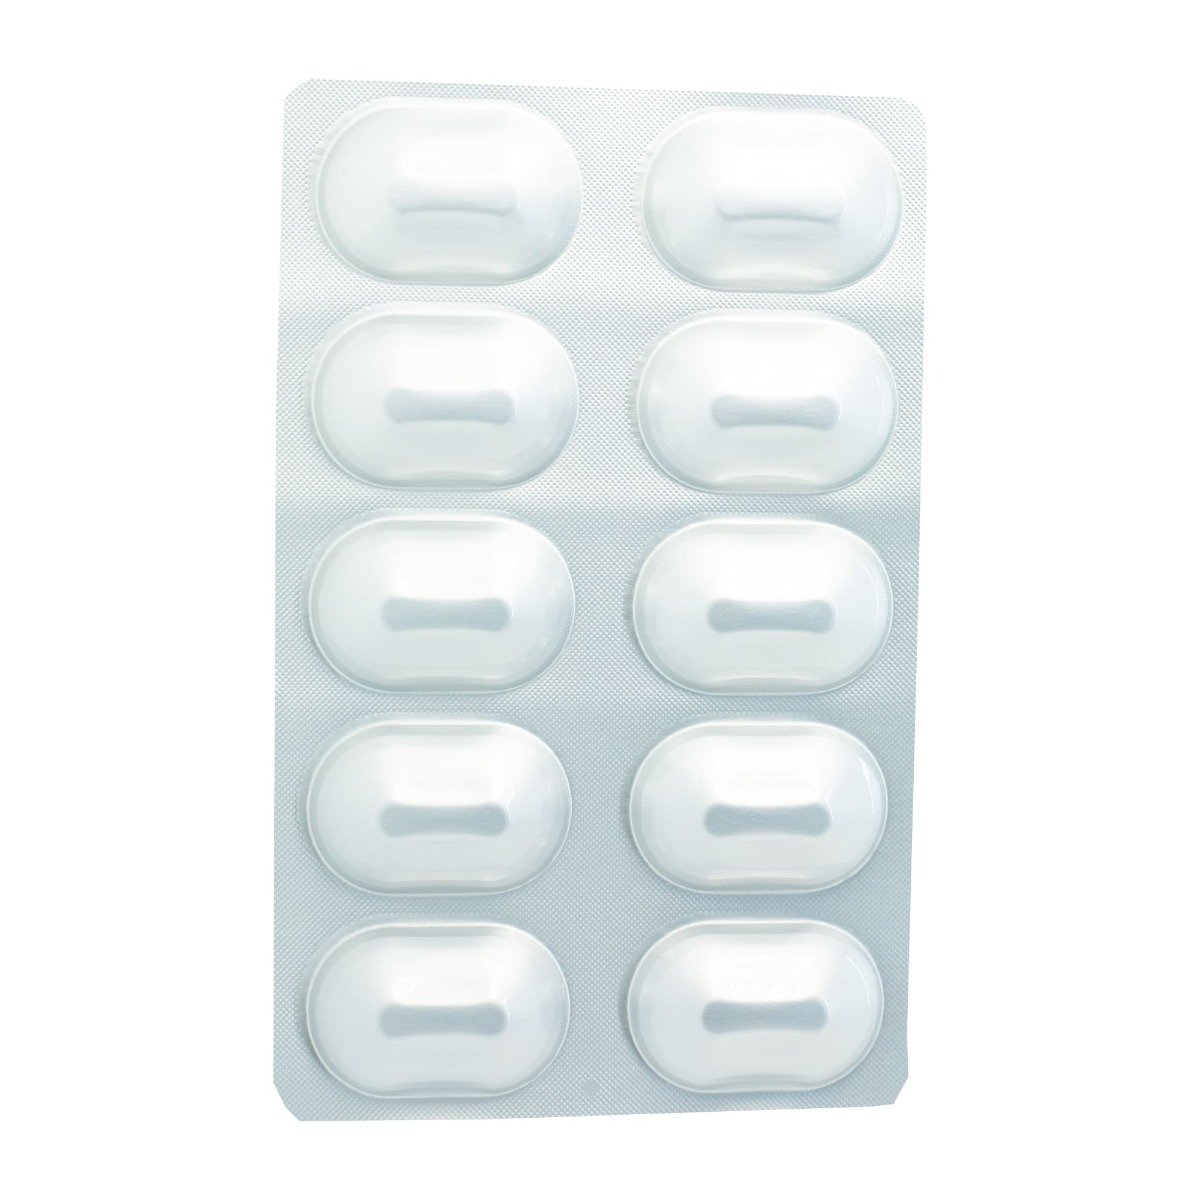 Galvus met 50 mg-850 mg - 30 Tablets - Bloom Pharmacy